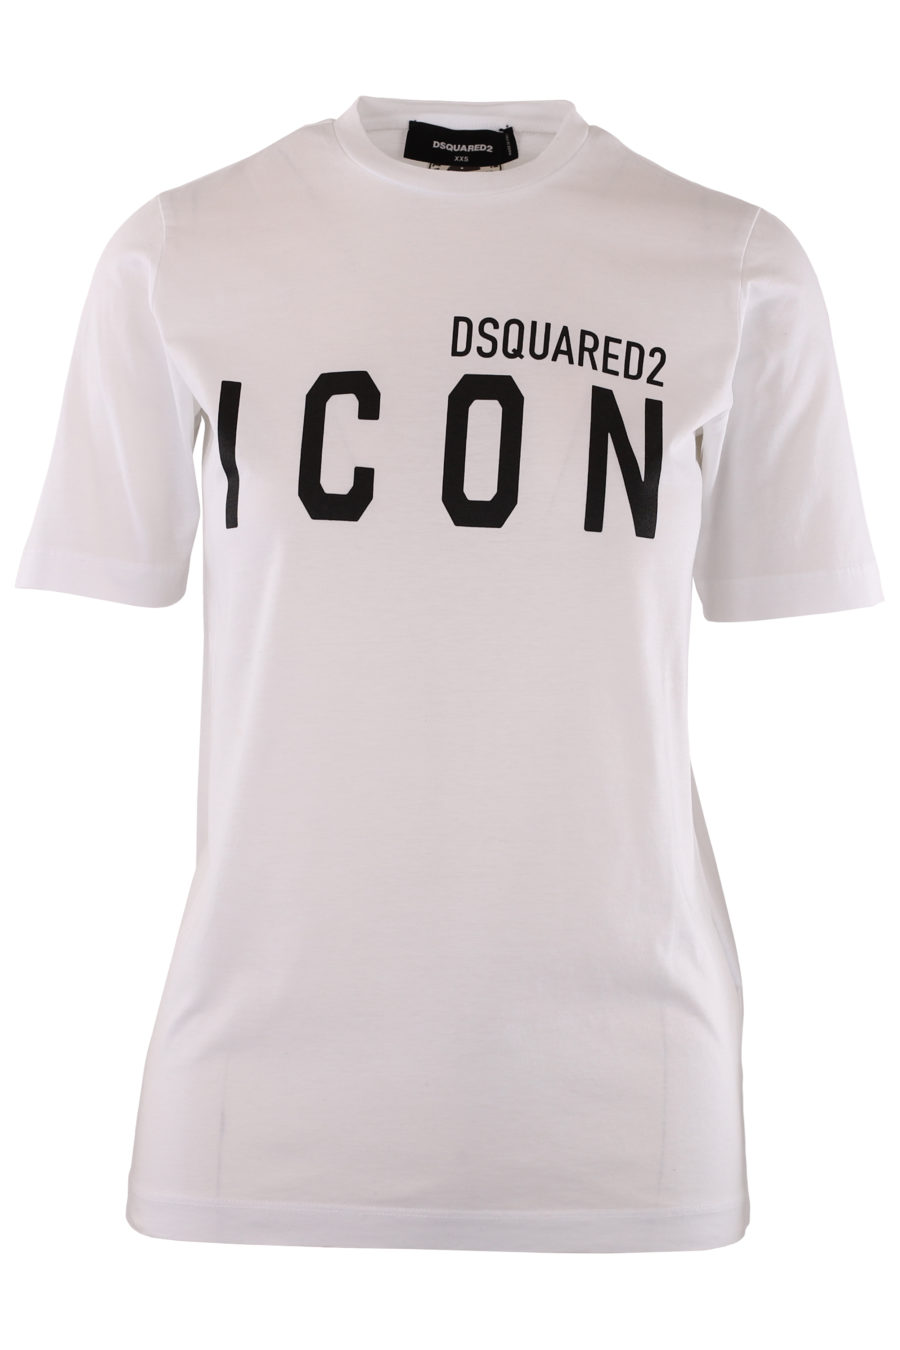 Camiseta blanca con logo negro "Icon" - 4fc0250a9075a5062da66e4e633974ed356d3044